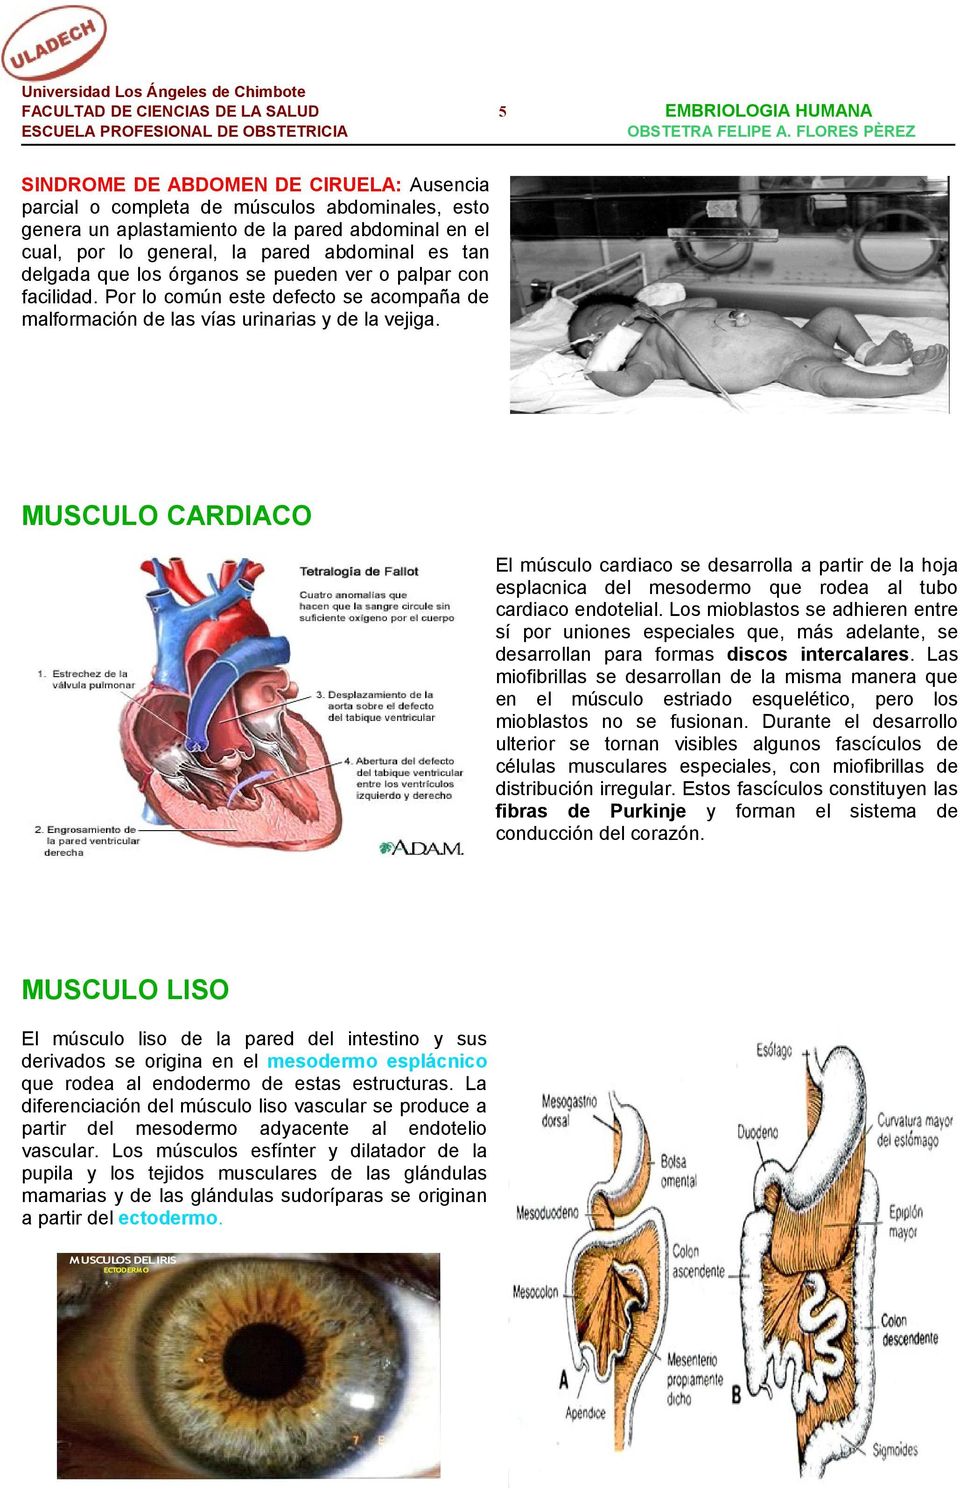 MUSCULO CARDIACO El músculo cardiaco se desarrolla a partir de la hoja esplacnica del mesodermo que rodea al tubo cardiaco endotelial.